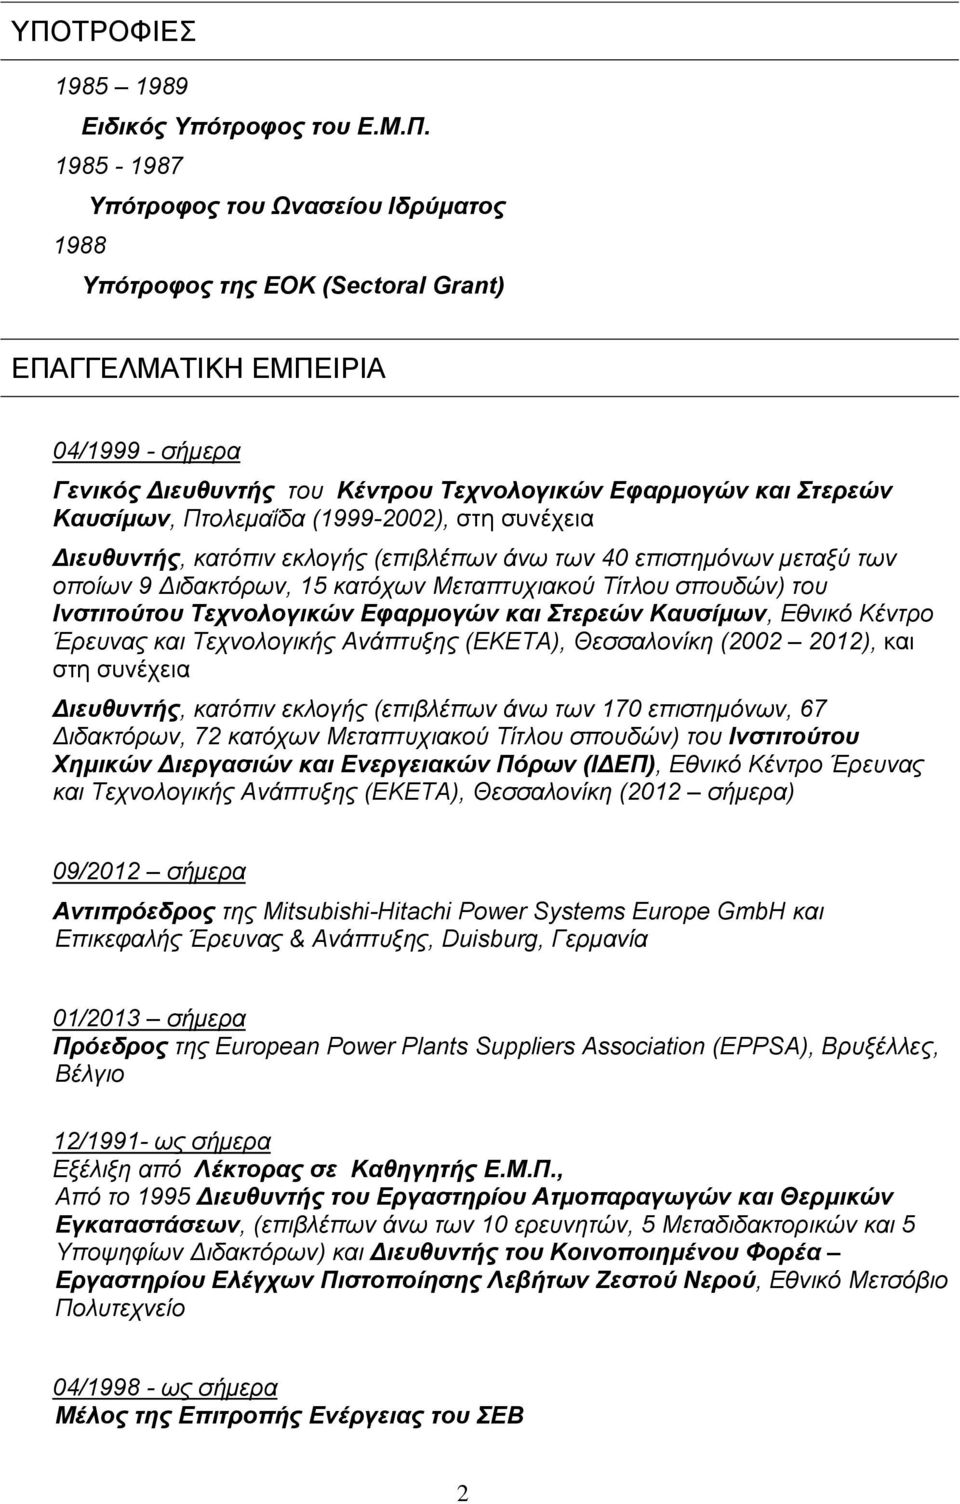 Μεταπτυχιακού Τίτλου σπουδών) του Ινστιτούτου Τεχνολογικών Εφαρμογών και Στερεών Καυσίμων, Εθνικό Κέντρο Έρευνας και Τεχνολογικής Ανάπτυξης (ΕΚΕΤΑ), Θεσσαλονίκη (2002 2012), και στη συνέχεια